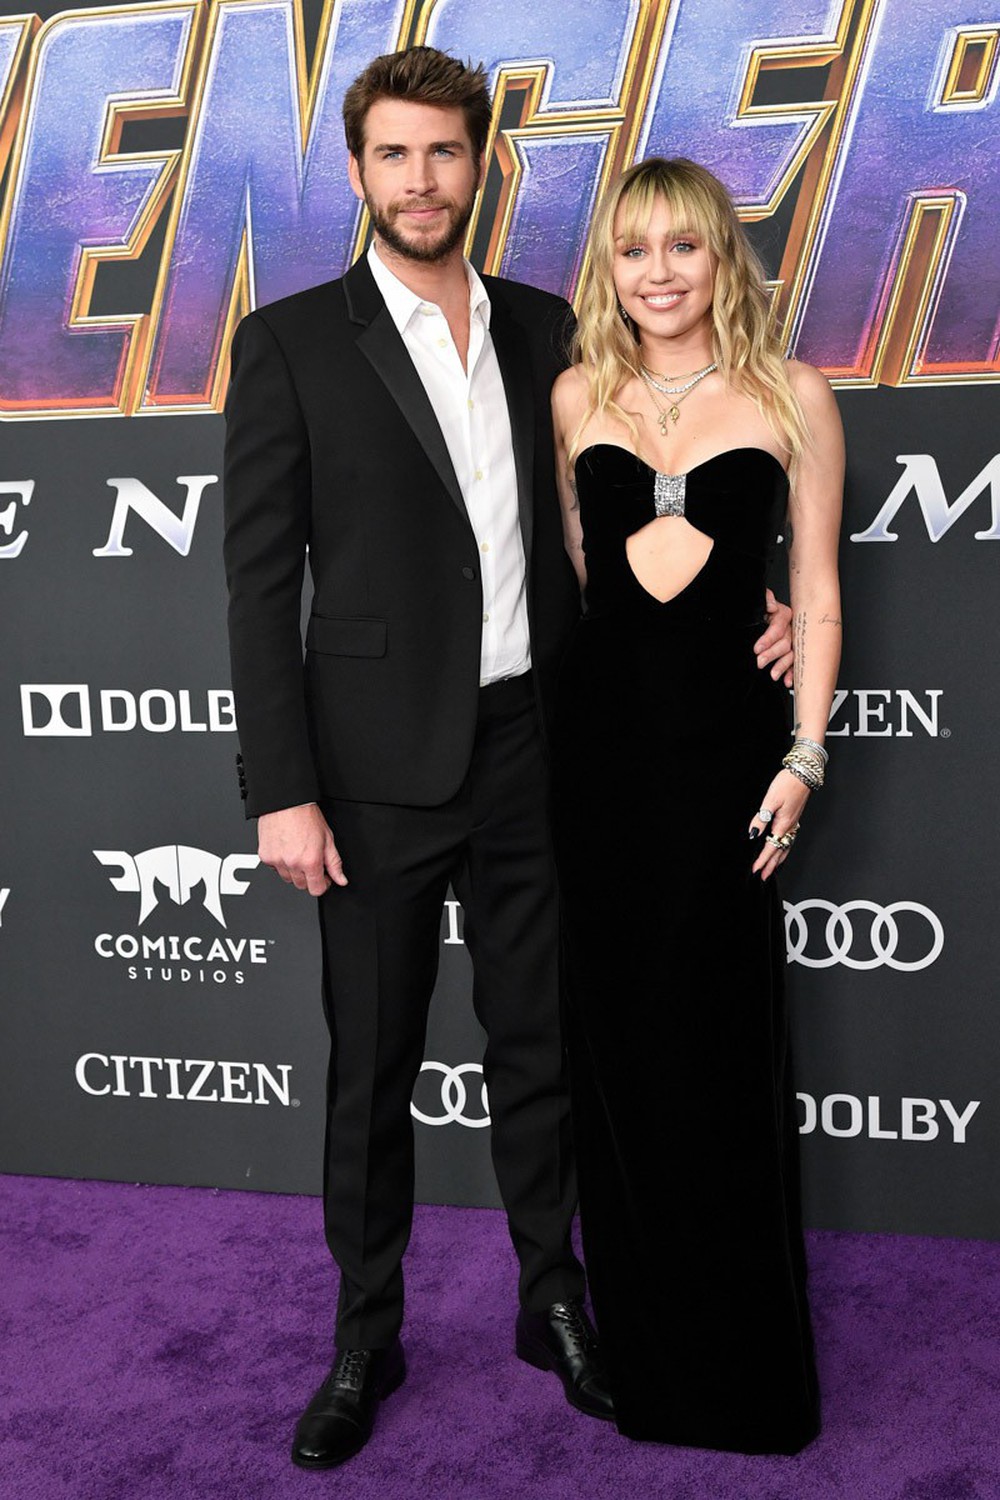 Siêu thảm tím Avengers: Endgame hot nhất 2019: Dàn sao Marvel sang chảnh, vợ chồng Miley Cyrus chiếm trọn spotlight - Ảnh 11.